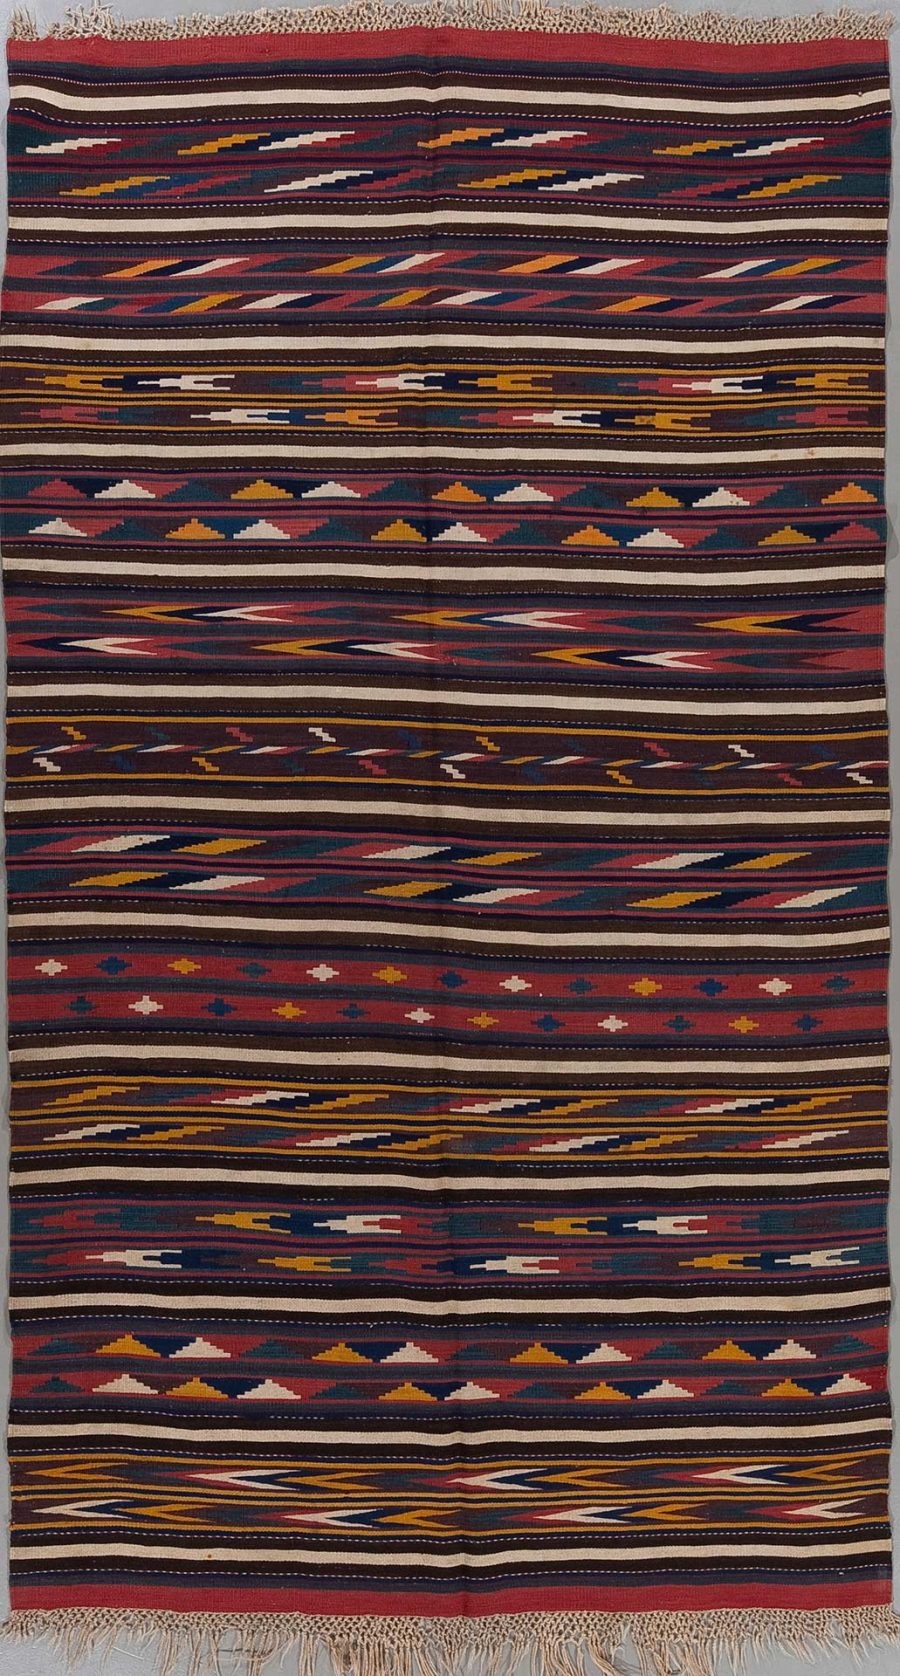 Handgewebter Teppich mit traditionellen ethnischen Mustern in verschiedenen Farben wie Rot, Dunkelblau, Gelb und Weiß, aufgehängt und vollständig sichtbar mit Fransen an beiden Enden.